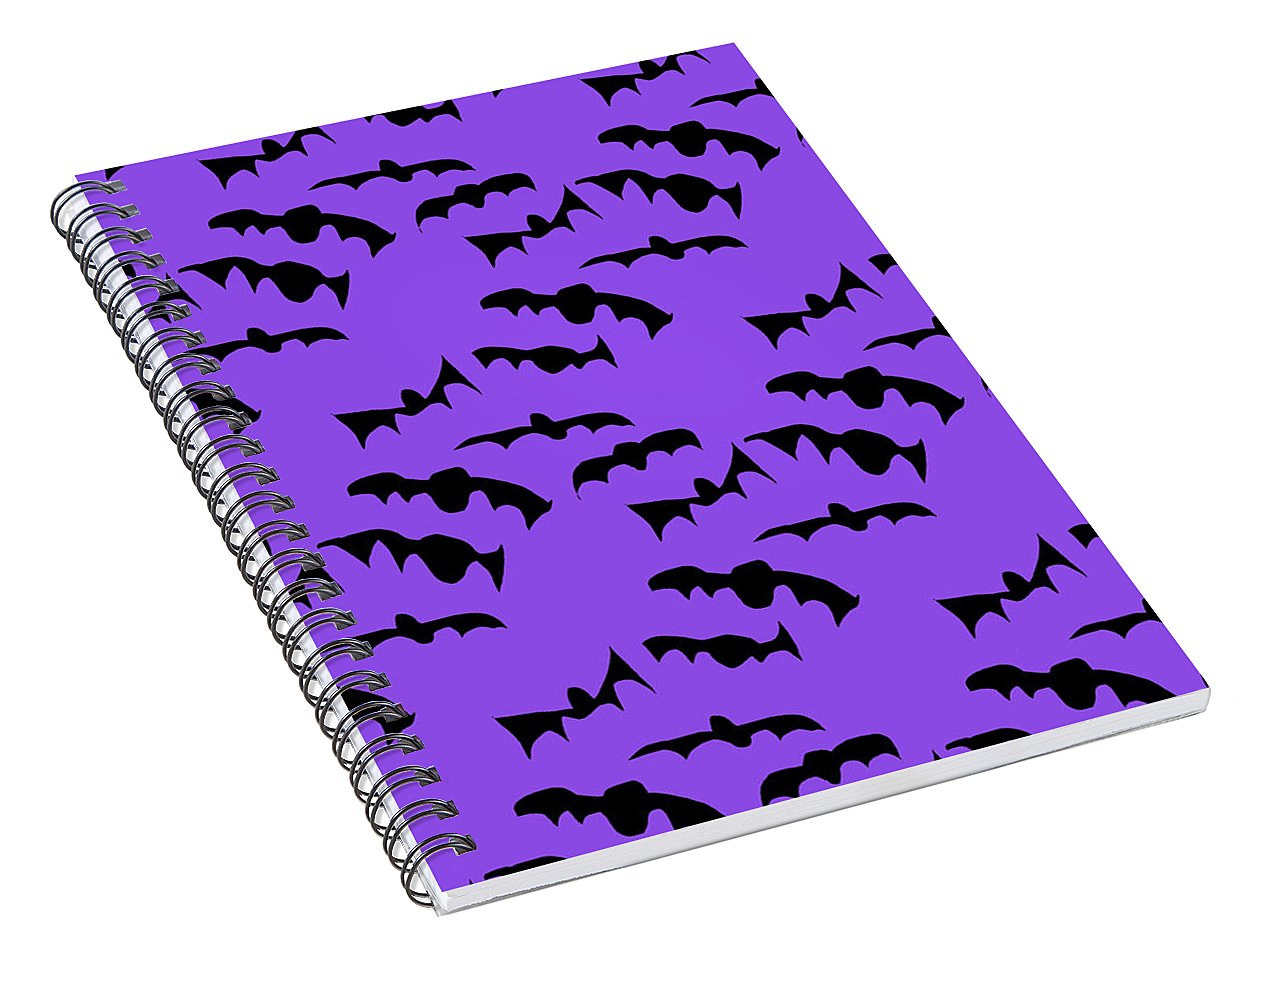 Bats Pattern - Spiral Notebook